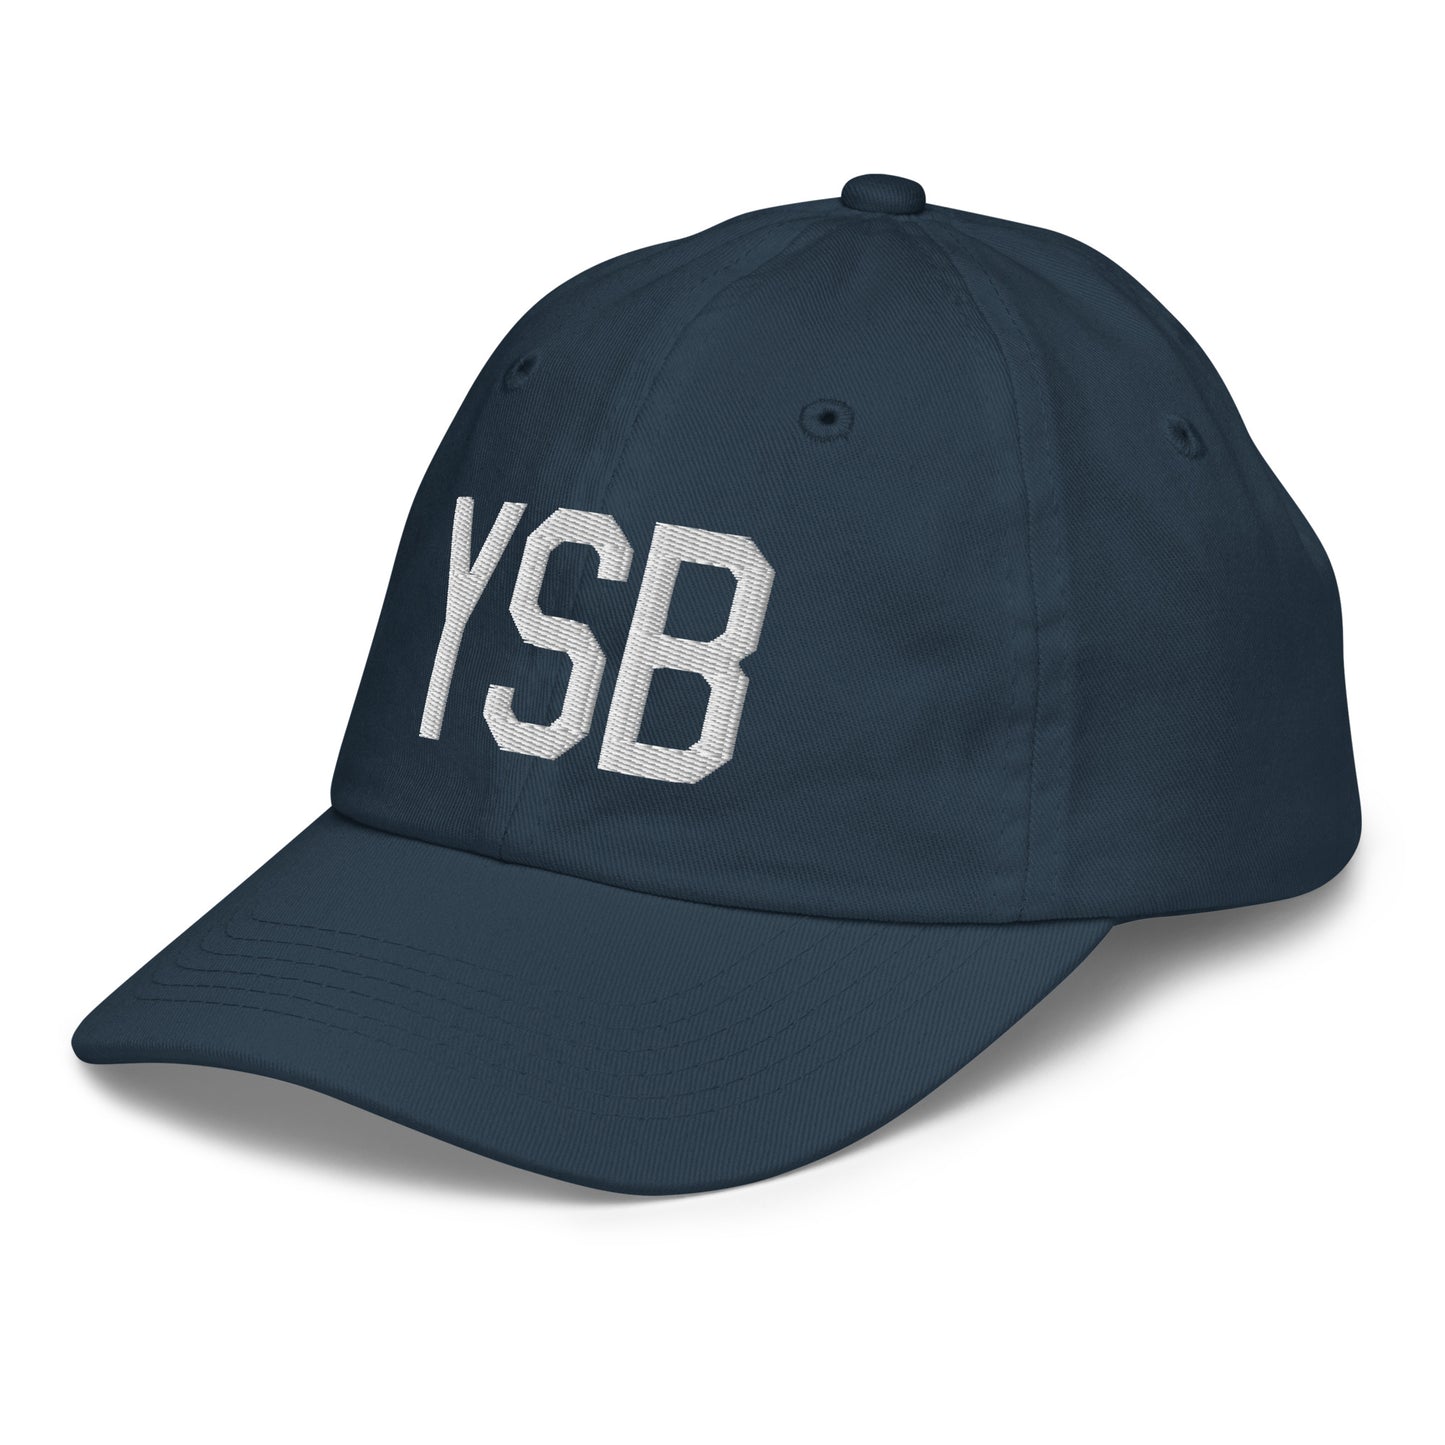 Airport Code Kid's Baseball Cap - White • YSB Sudbury • YHM Designs - Image 16